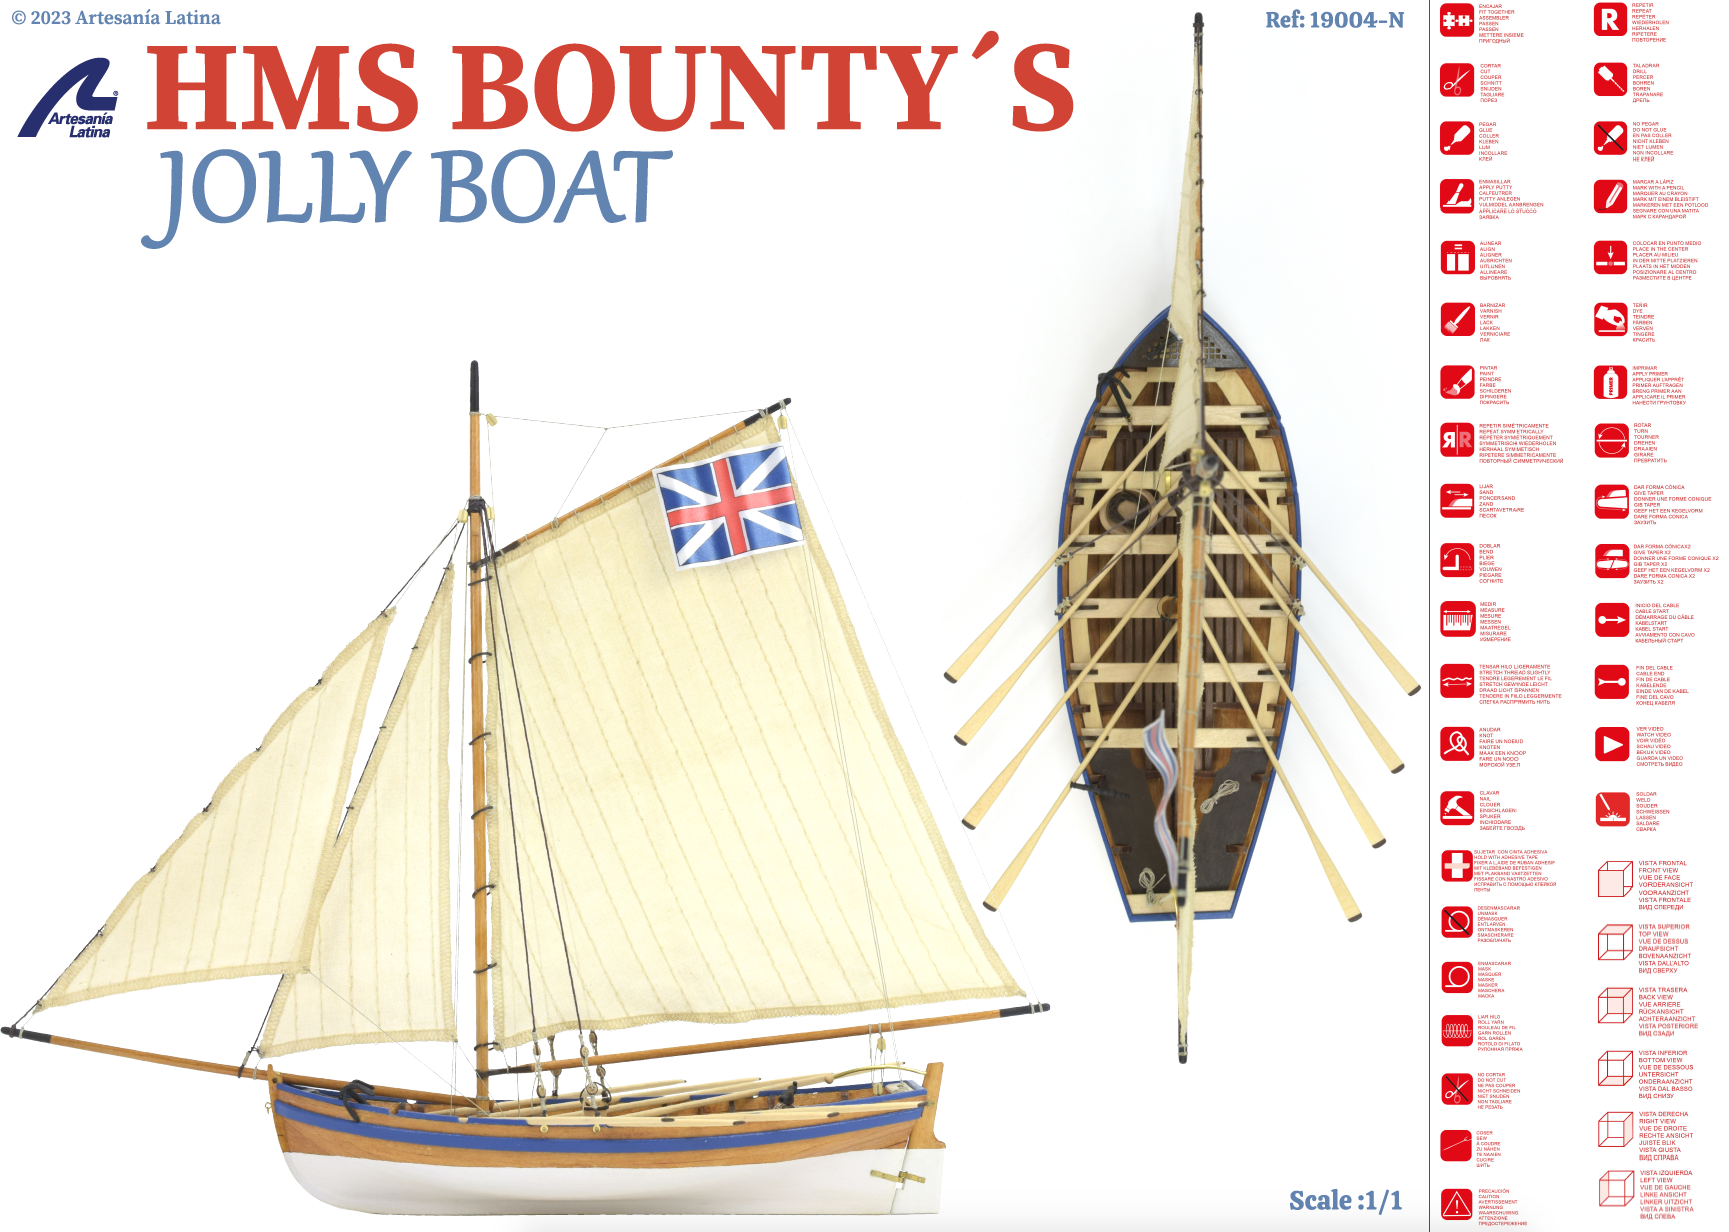 Plan Modèle Jolly Boat HMS Bounty (19004-N). Kit renouvelé 1:25 en bois par Artesanía Latina.